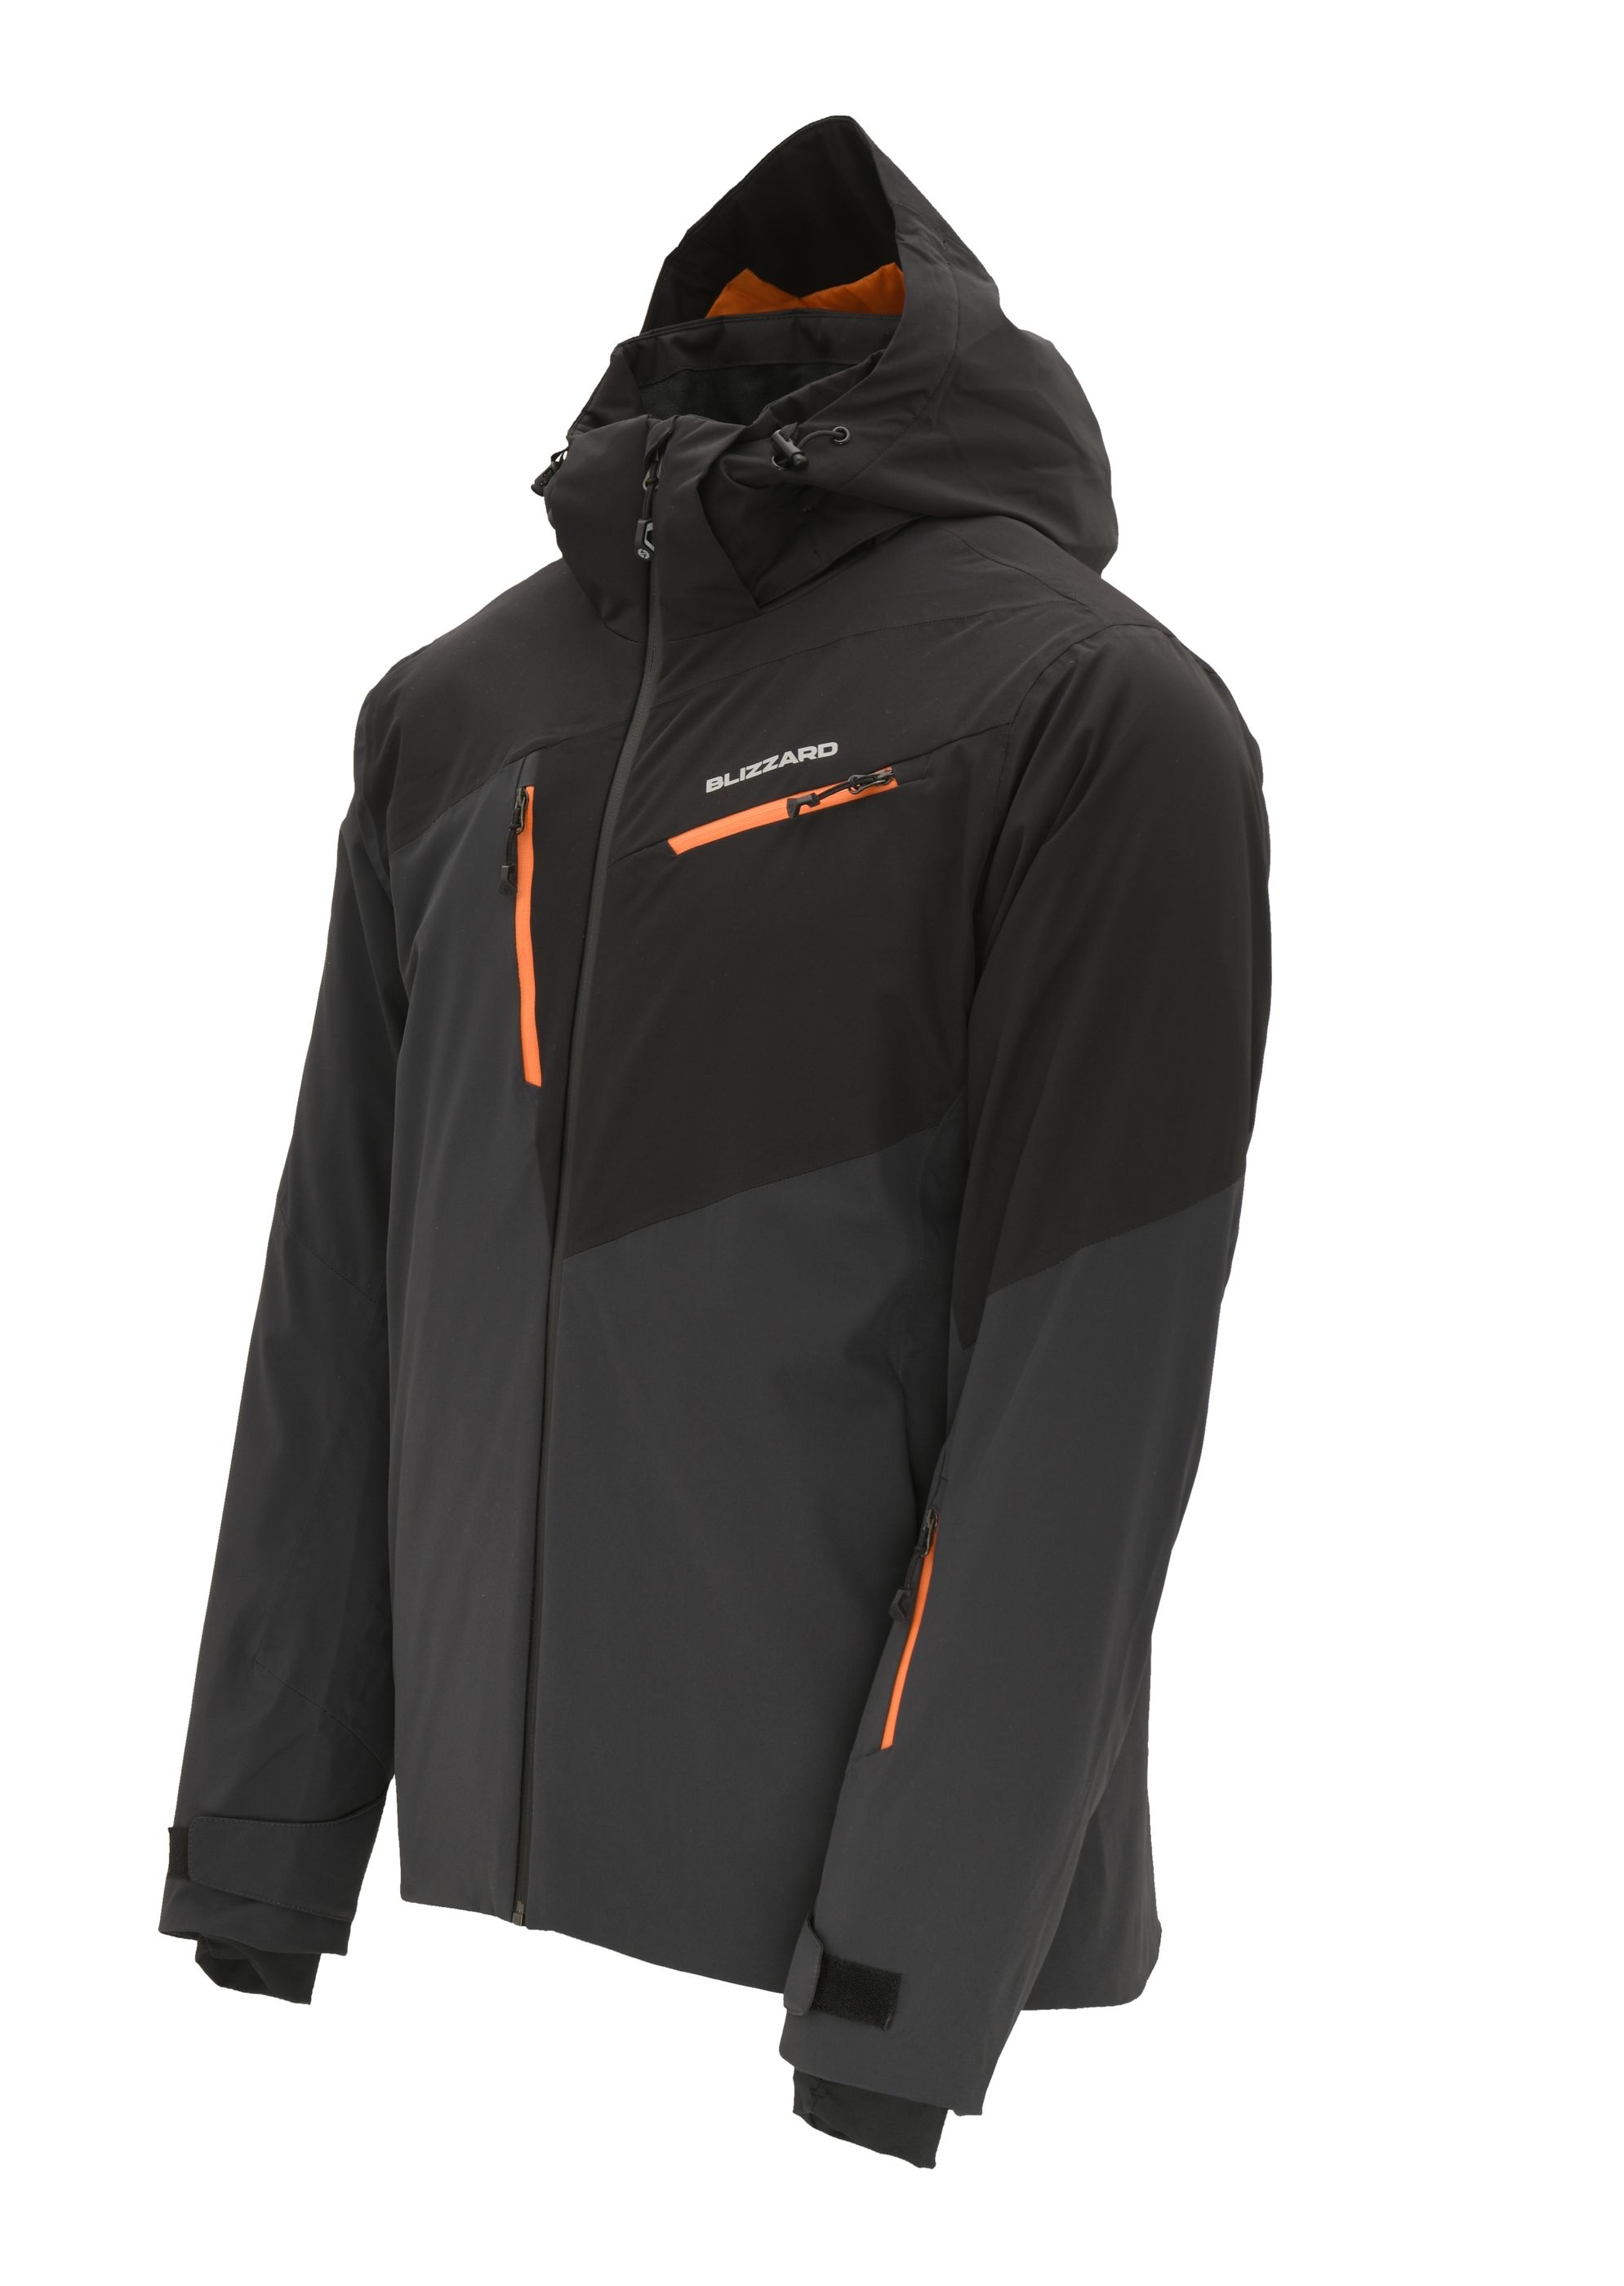 Ski Jacket Leogang, anthracite/black